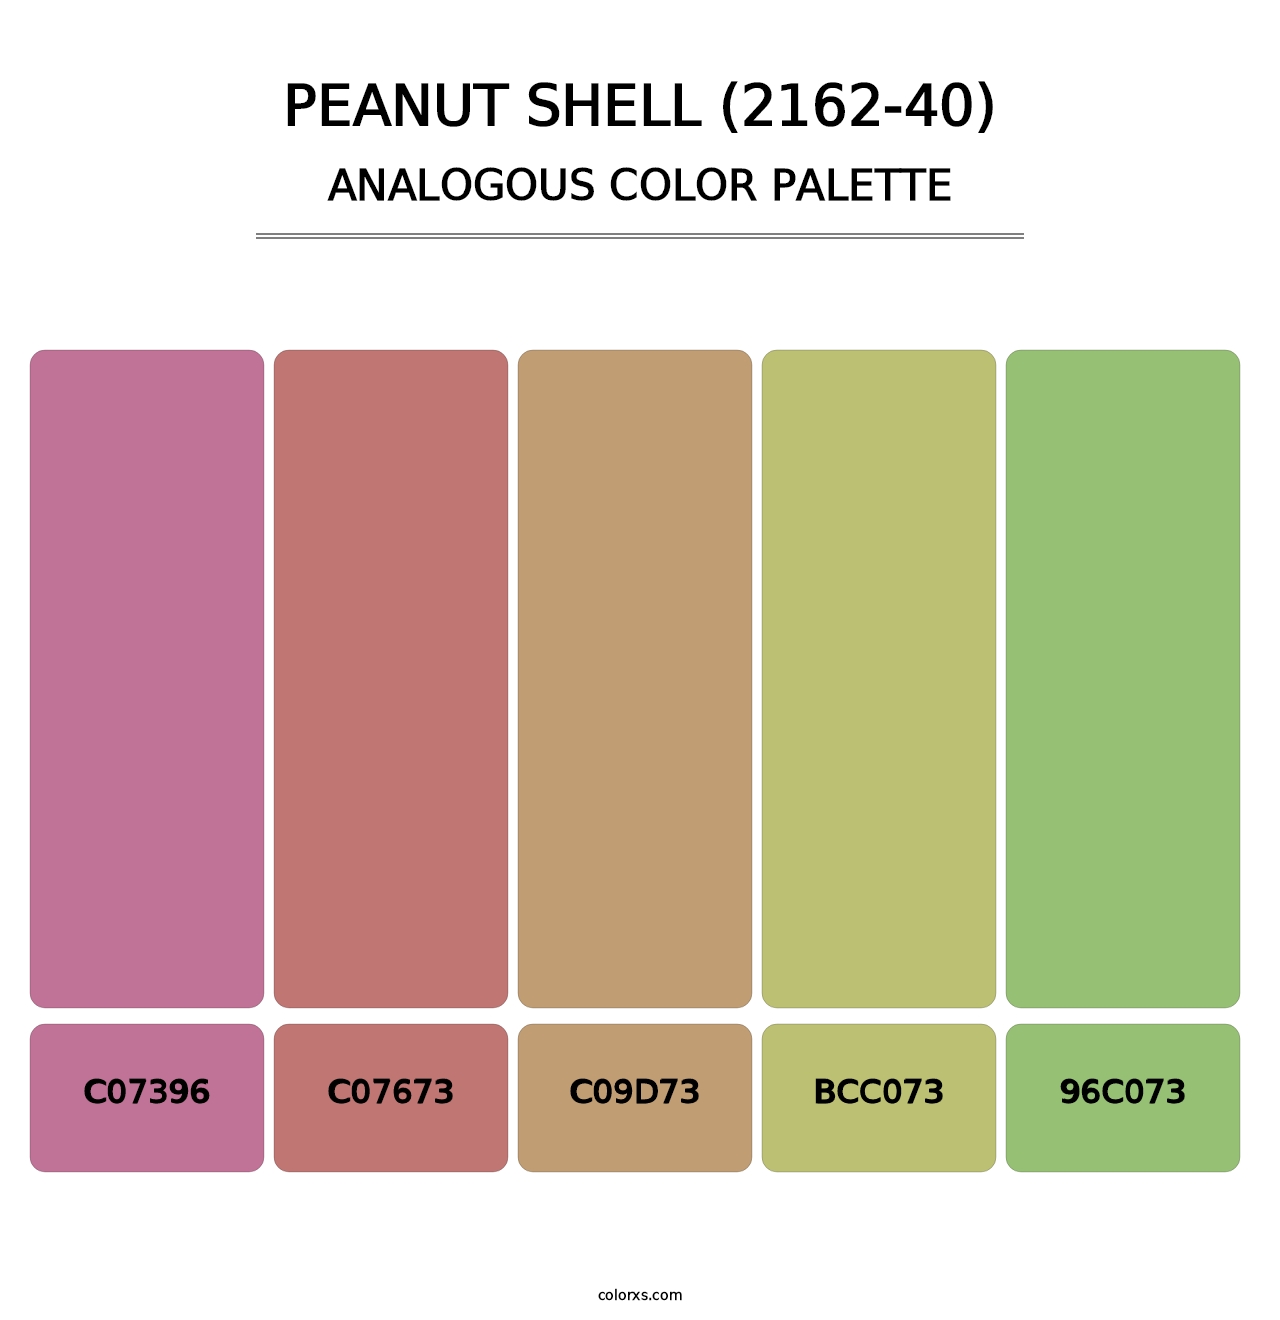 Peanut Shell (2162-40) - Analogous Color Palette